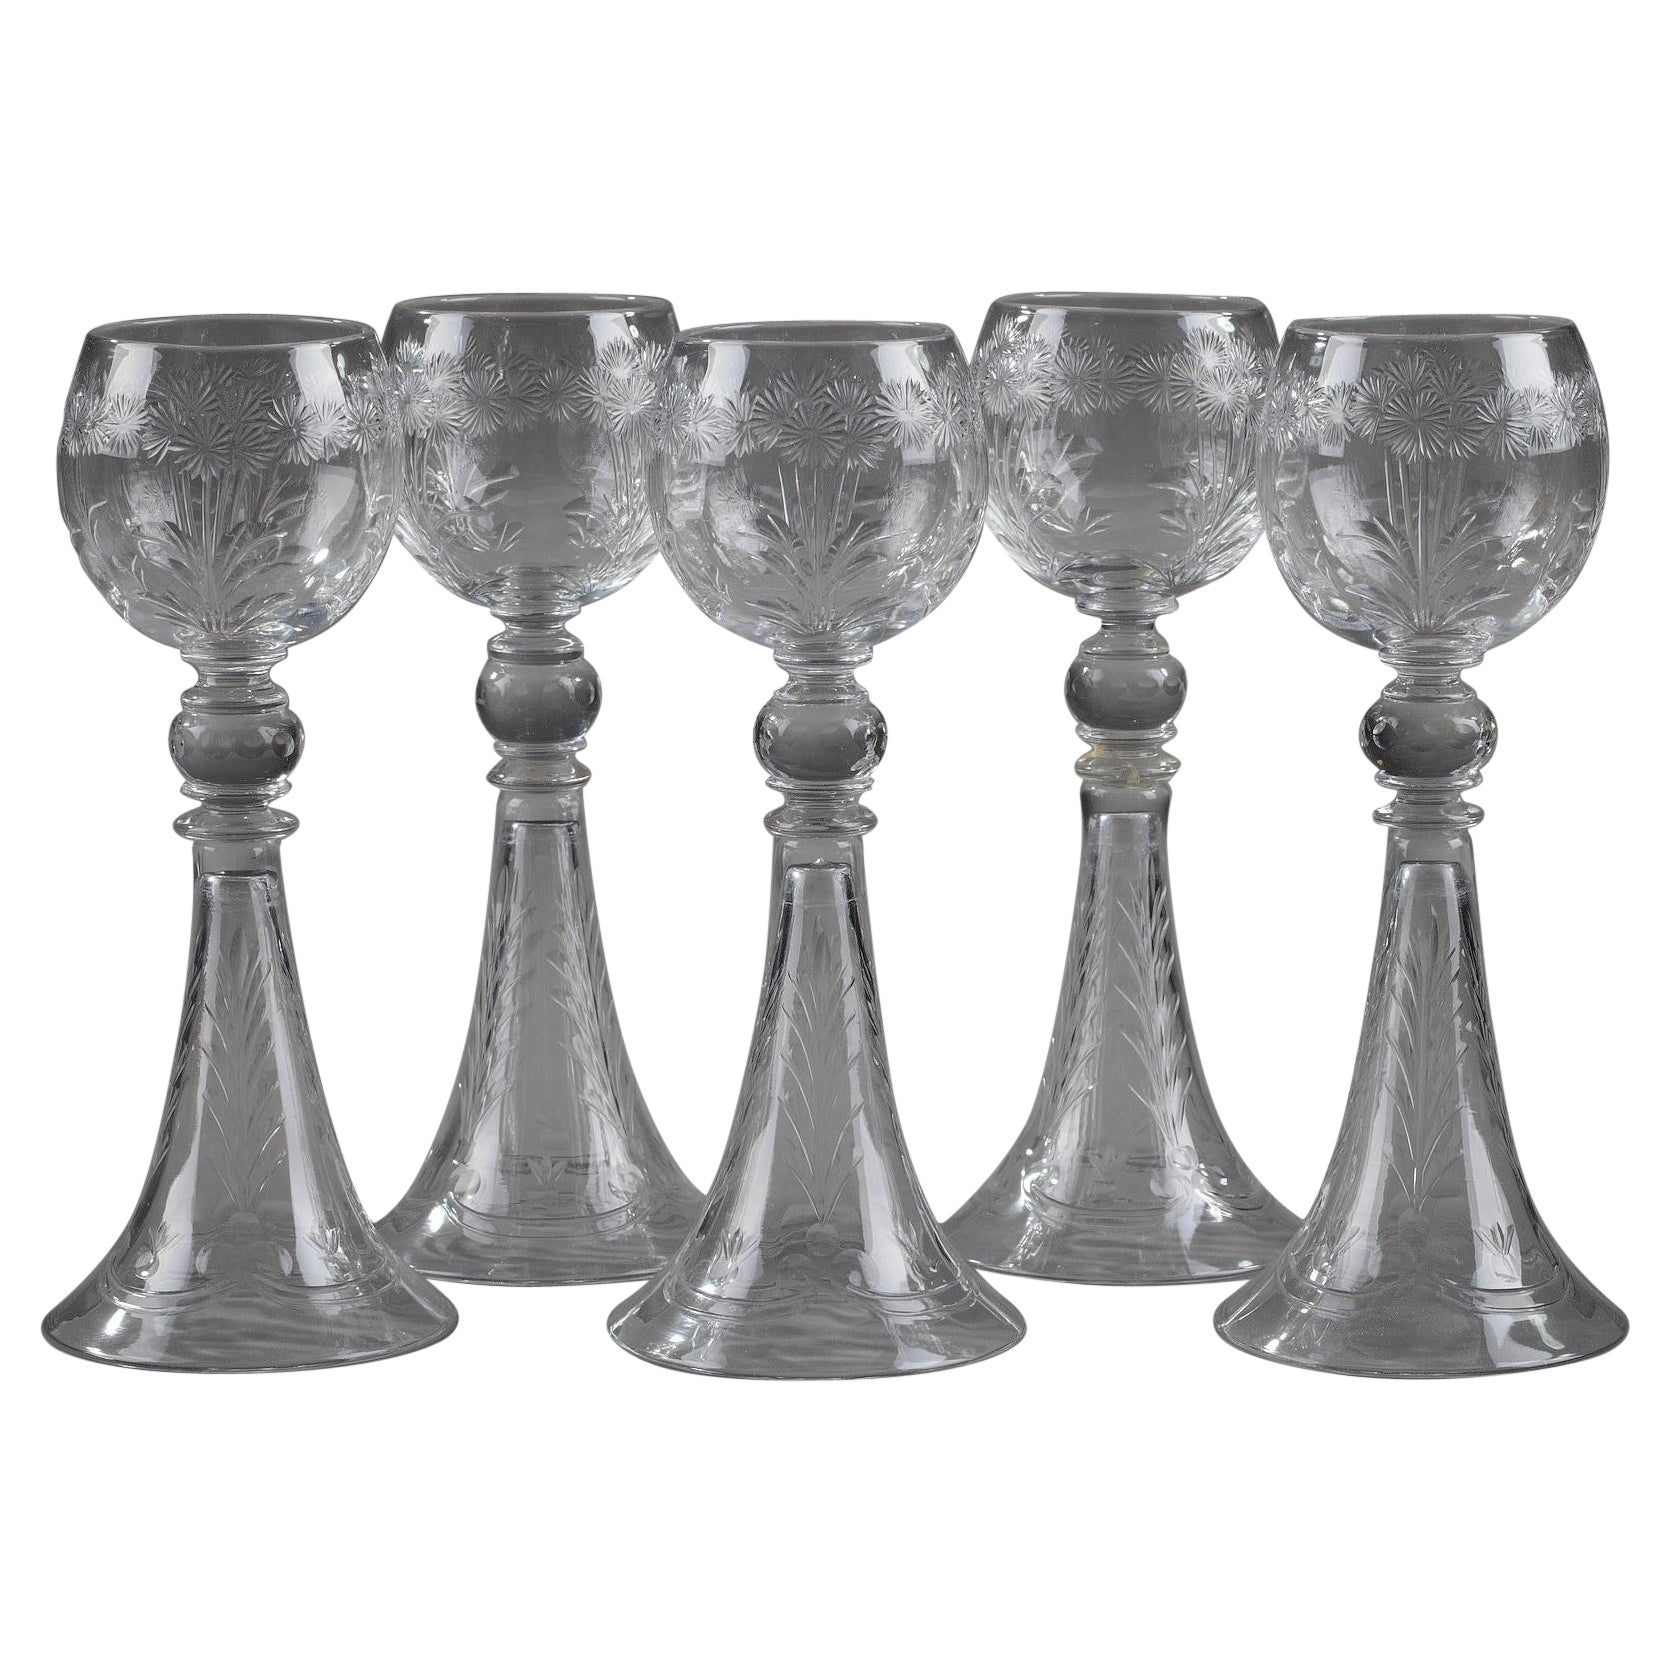 Set of Five Crystal Glasses